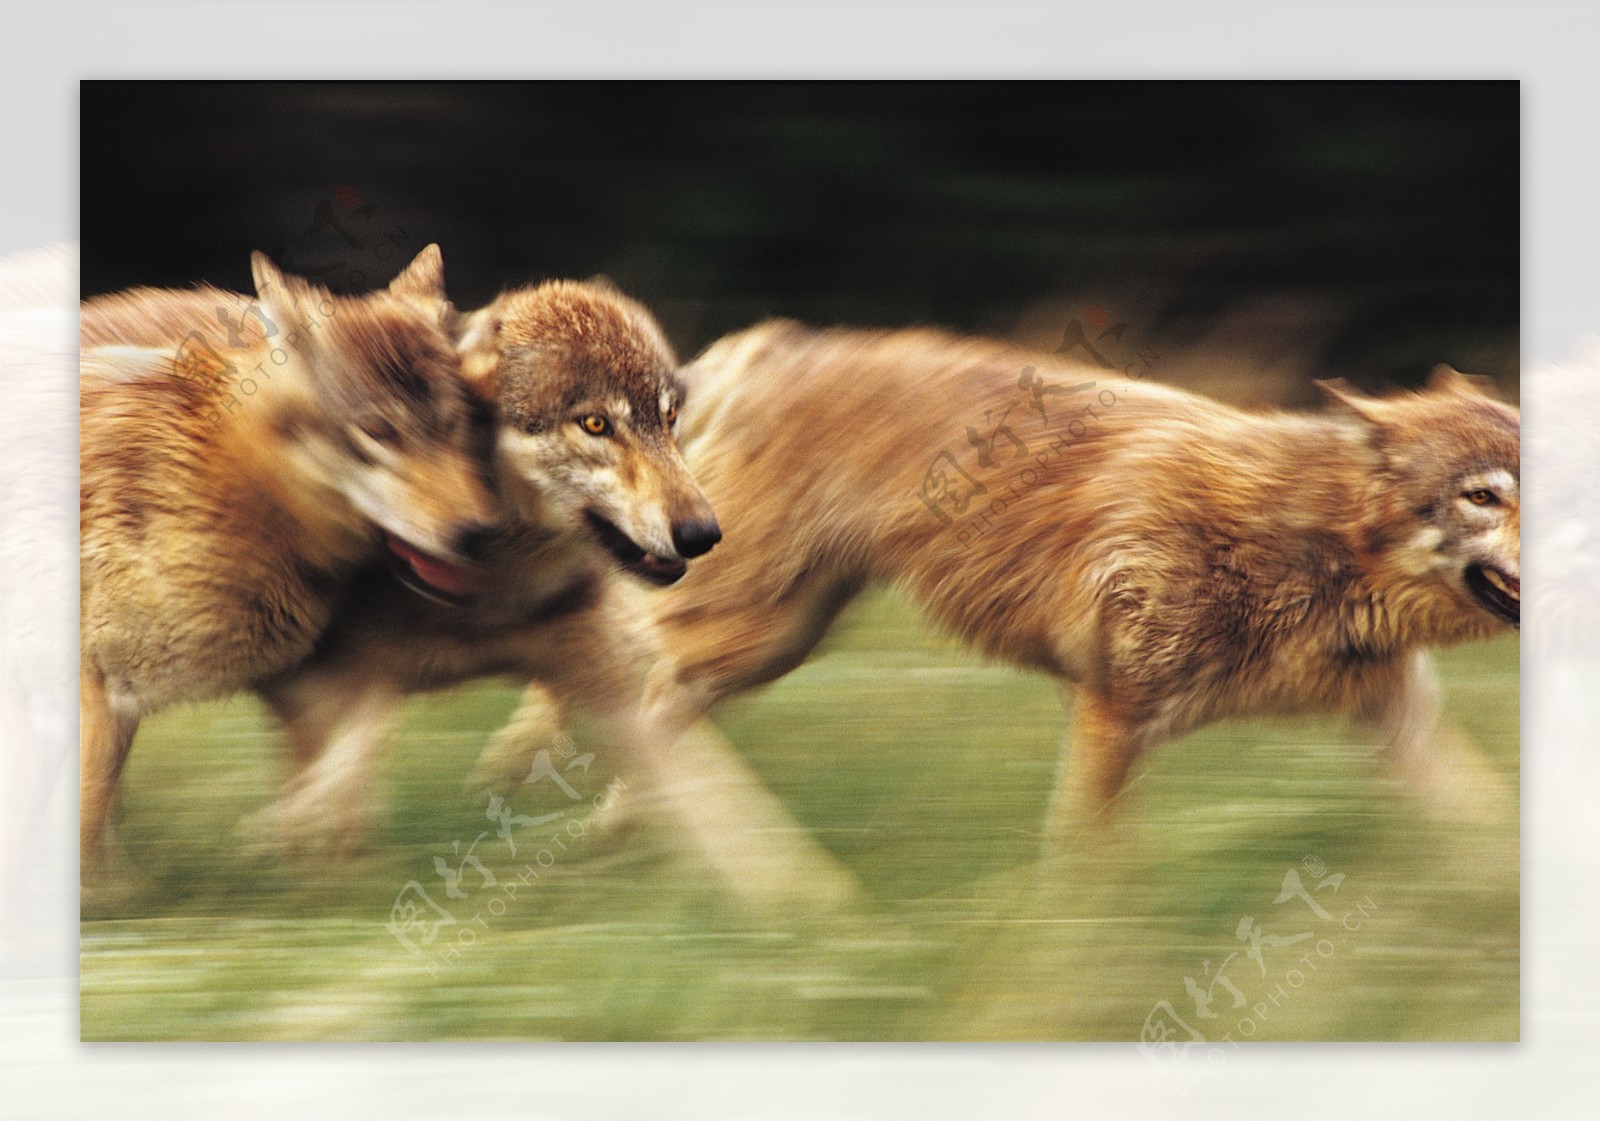 奔跑的狼群图片